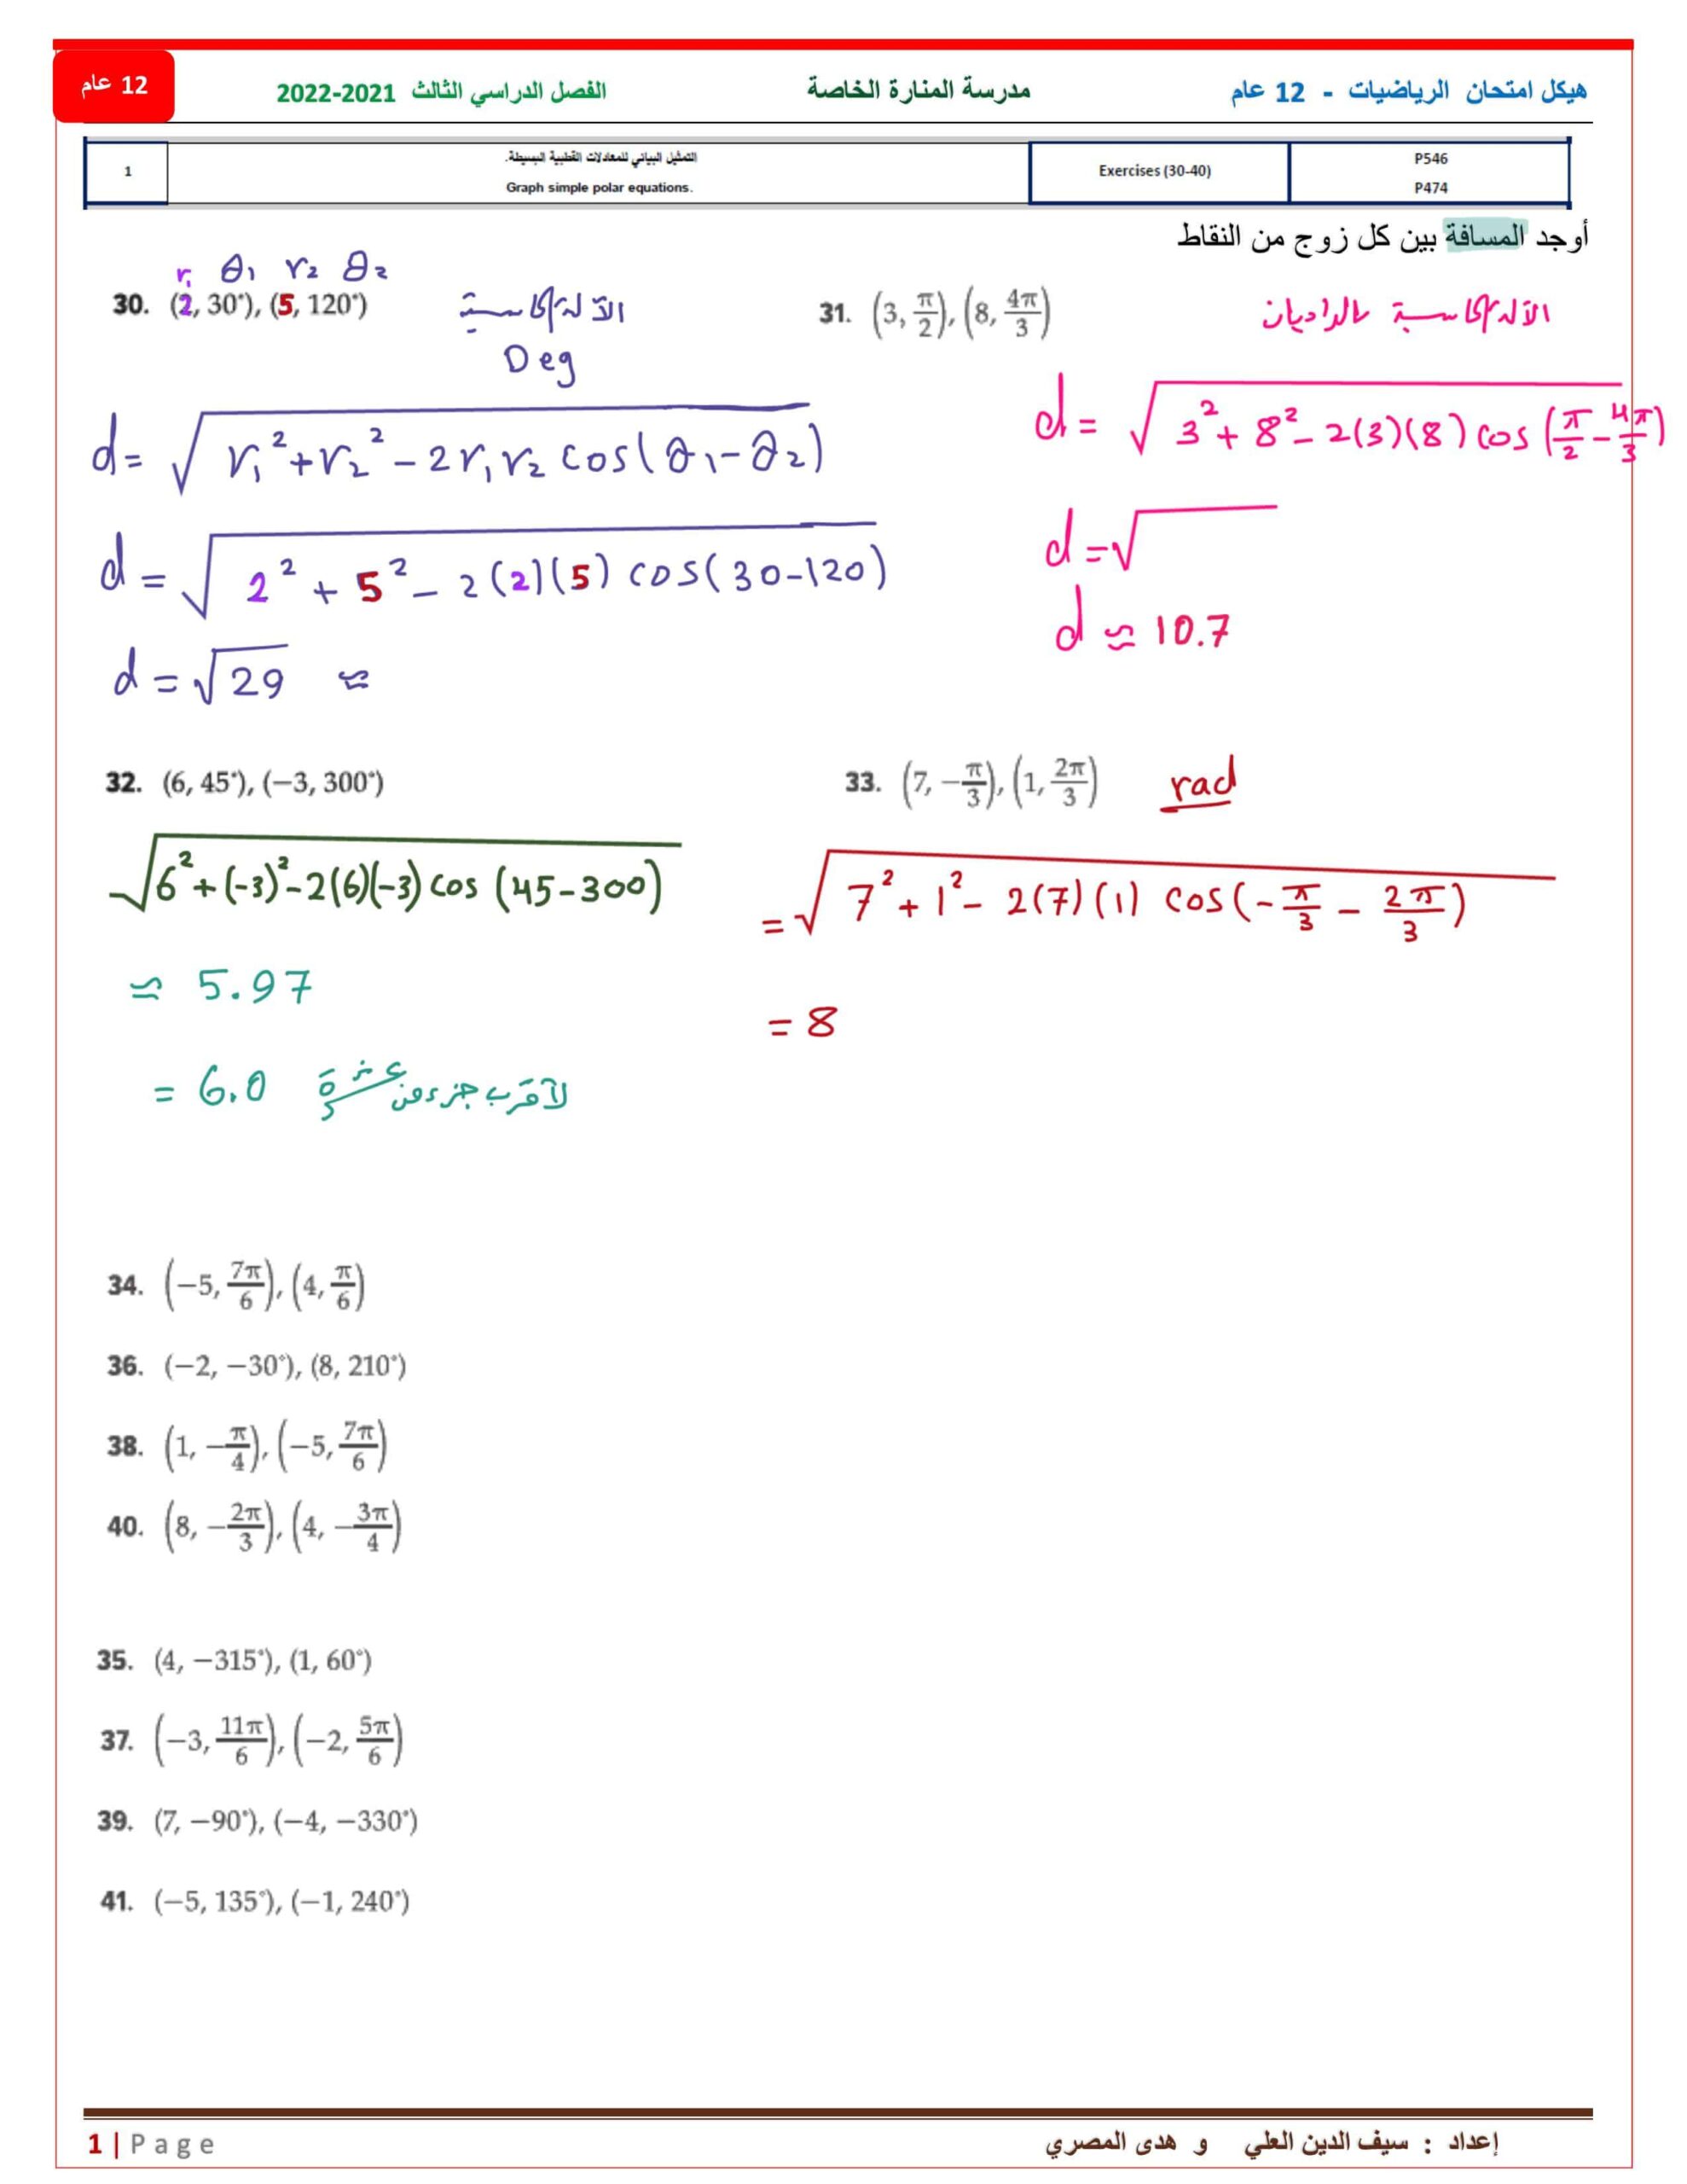 حل هيكل امتحان الرياضيات المتكاملة الصف الثاني عشر عام